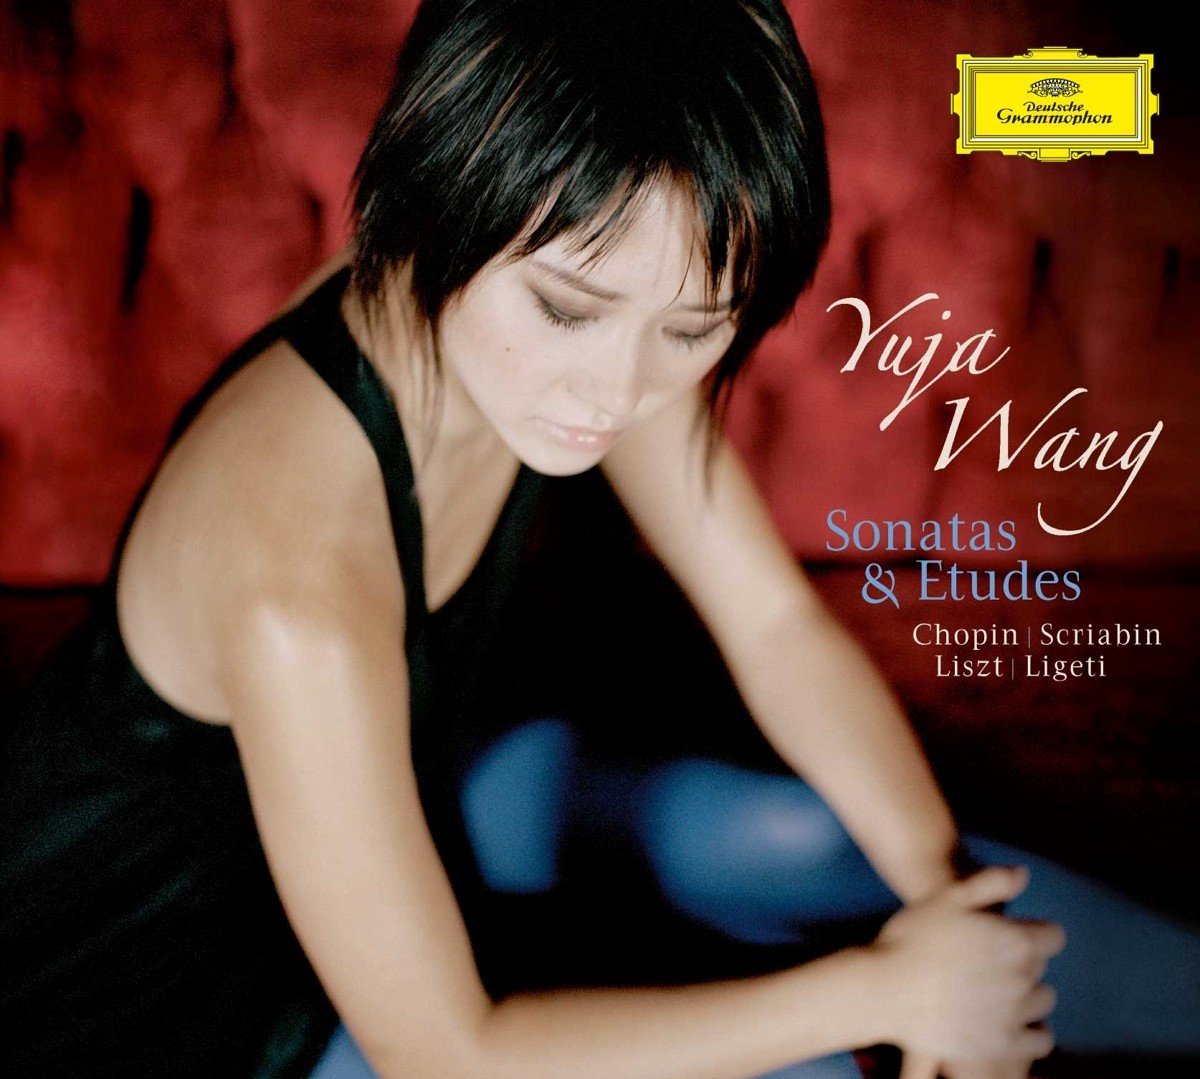 Yuja Wang - Sonatas & Études (CD) - Yuja Wang